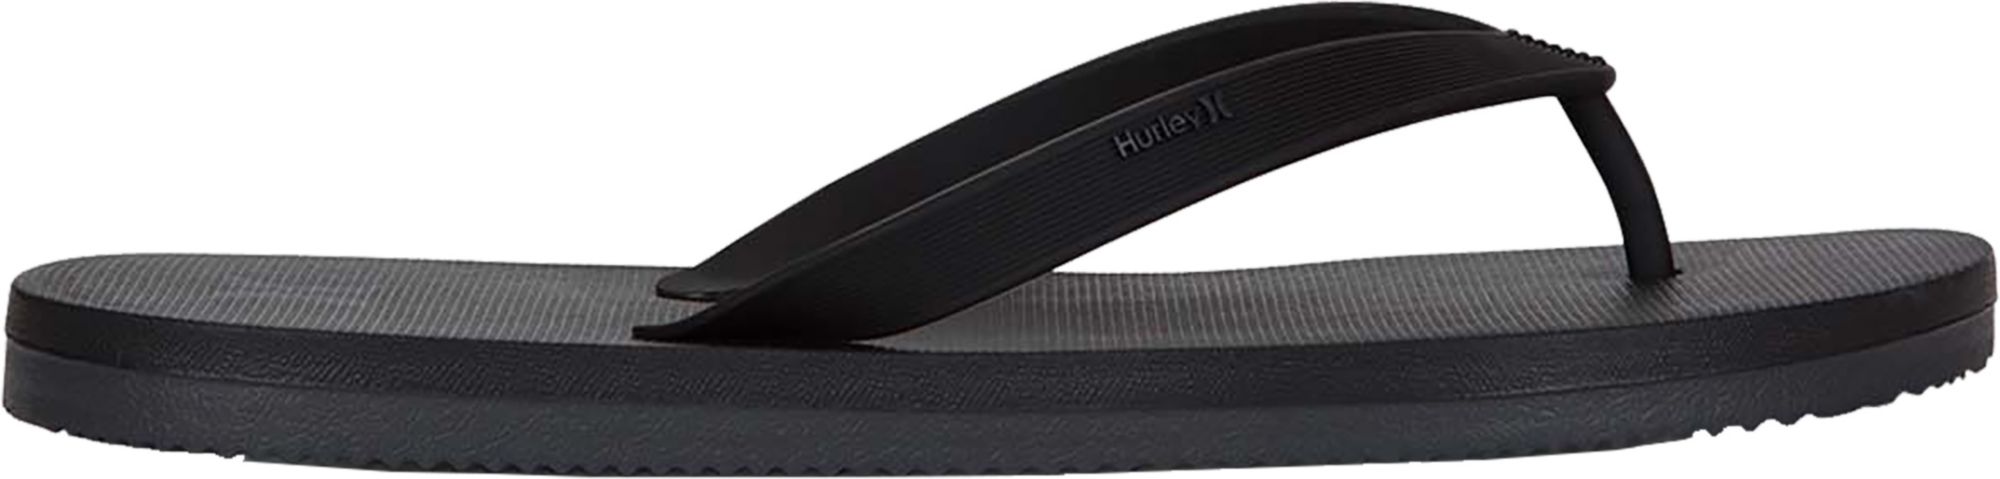 hurley 5.0 flip flops